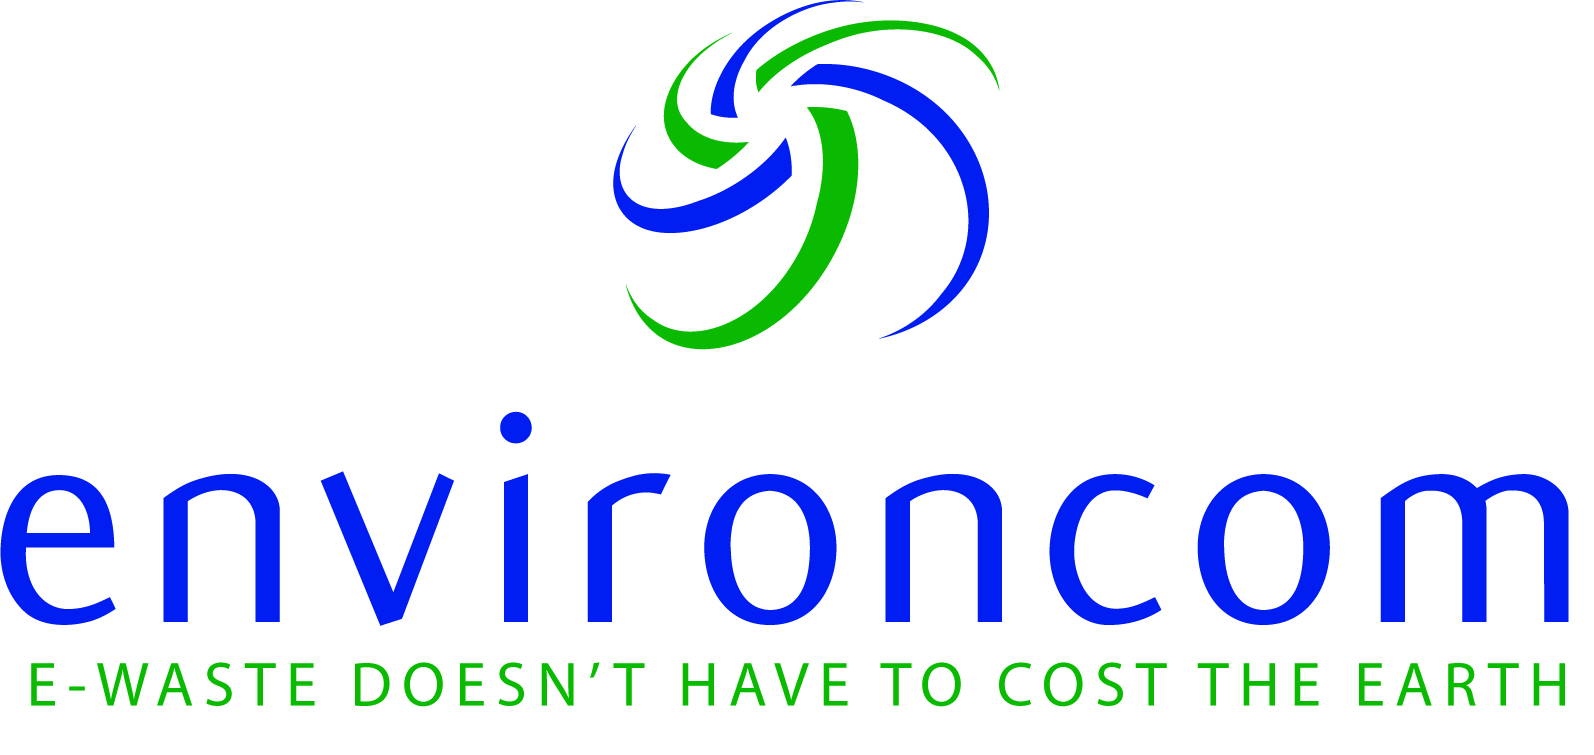 Environcom_logo-E-Waste.jpg